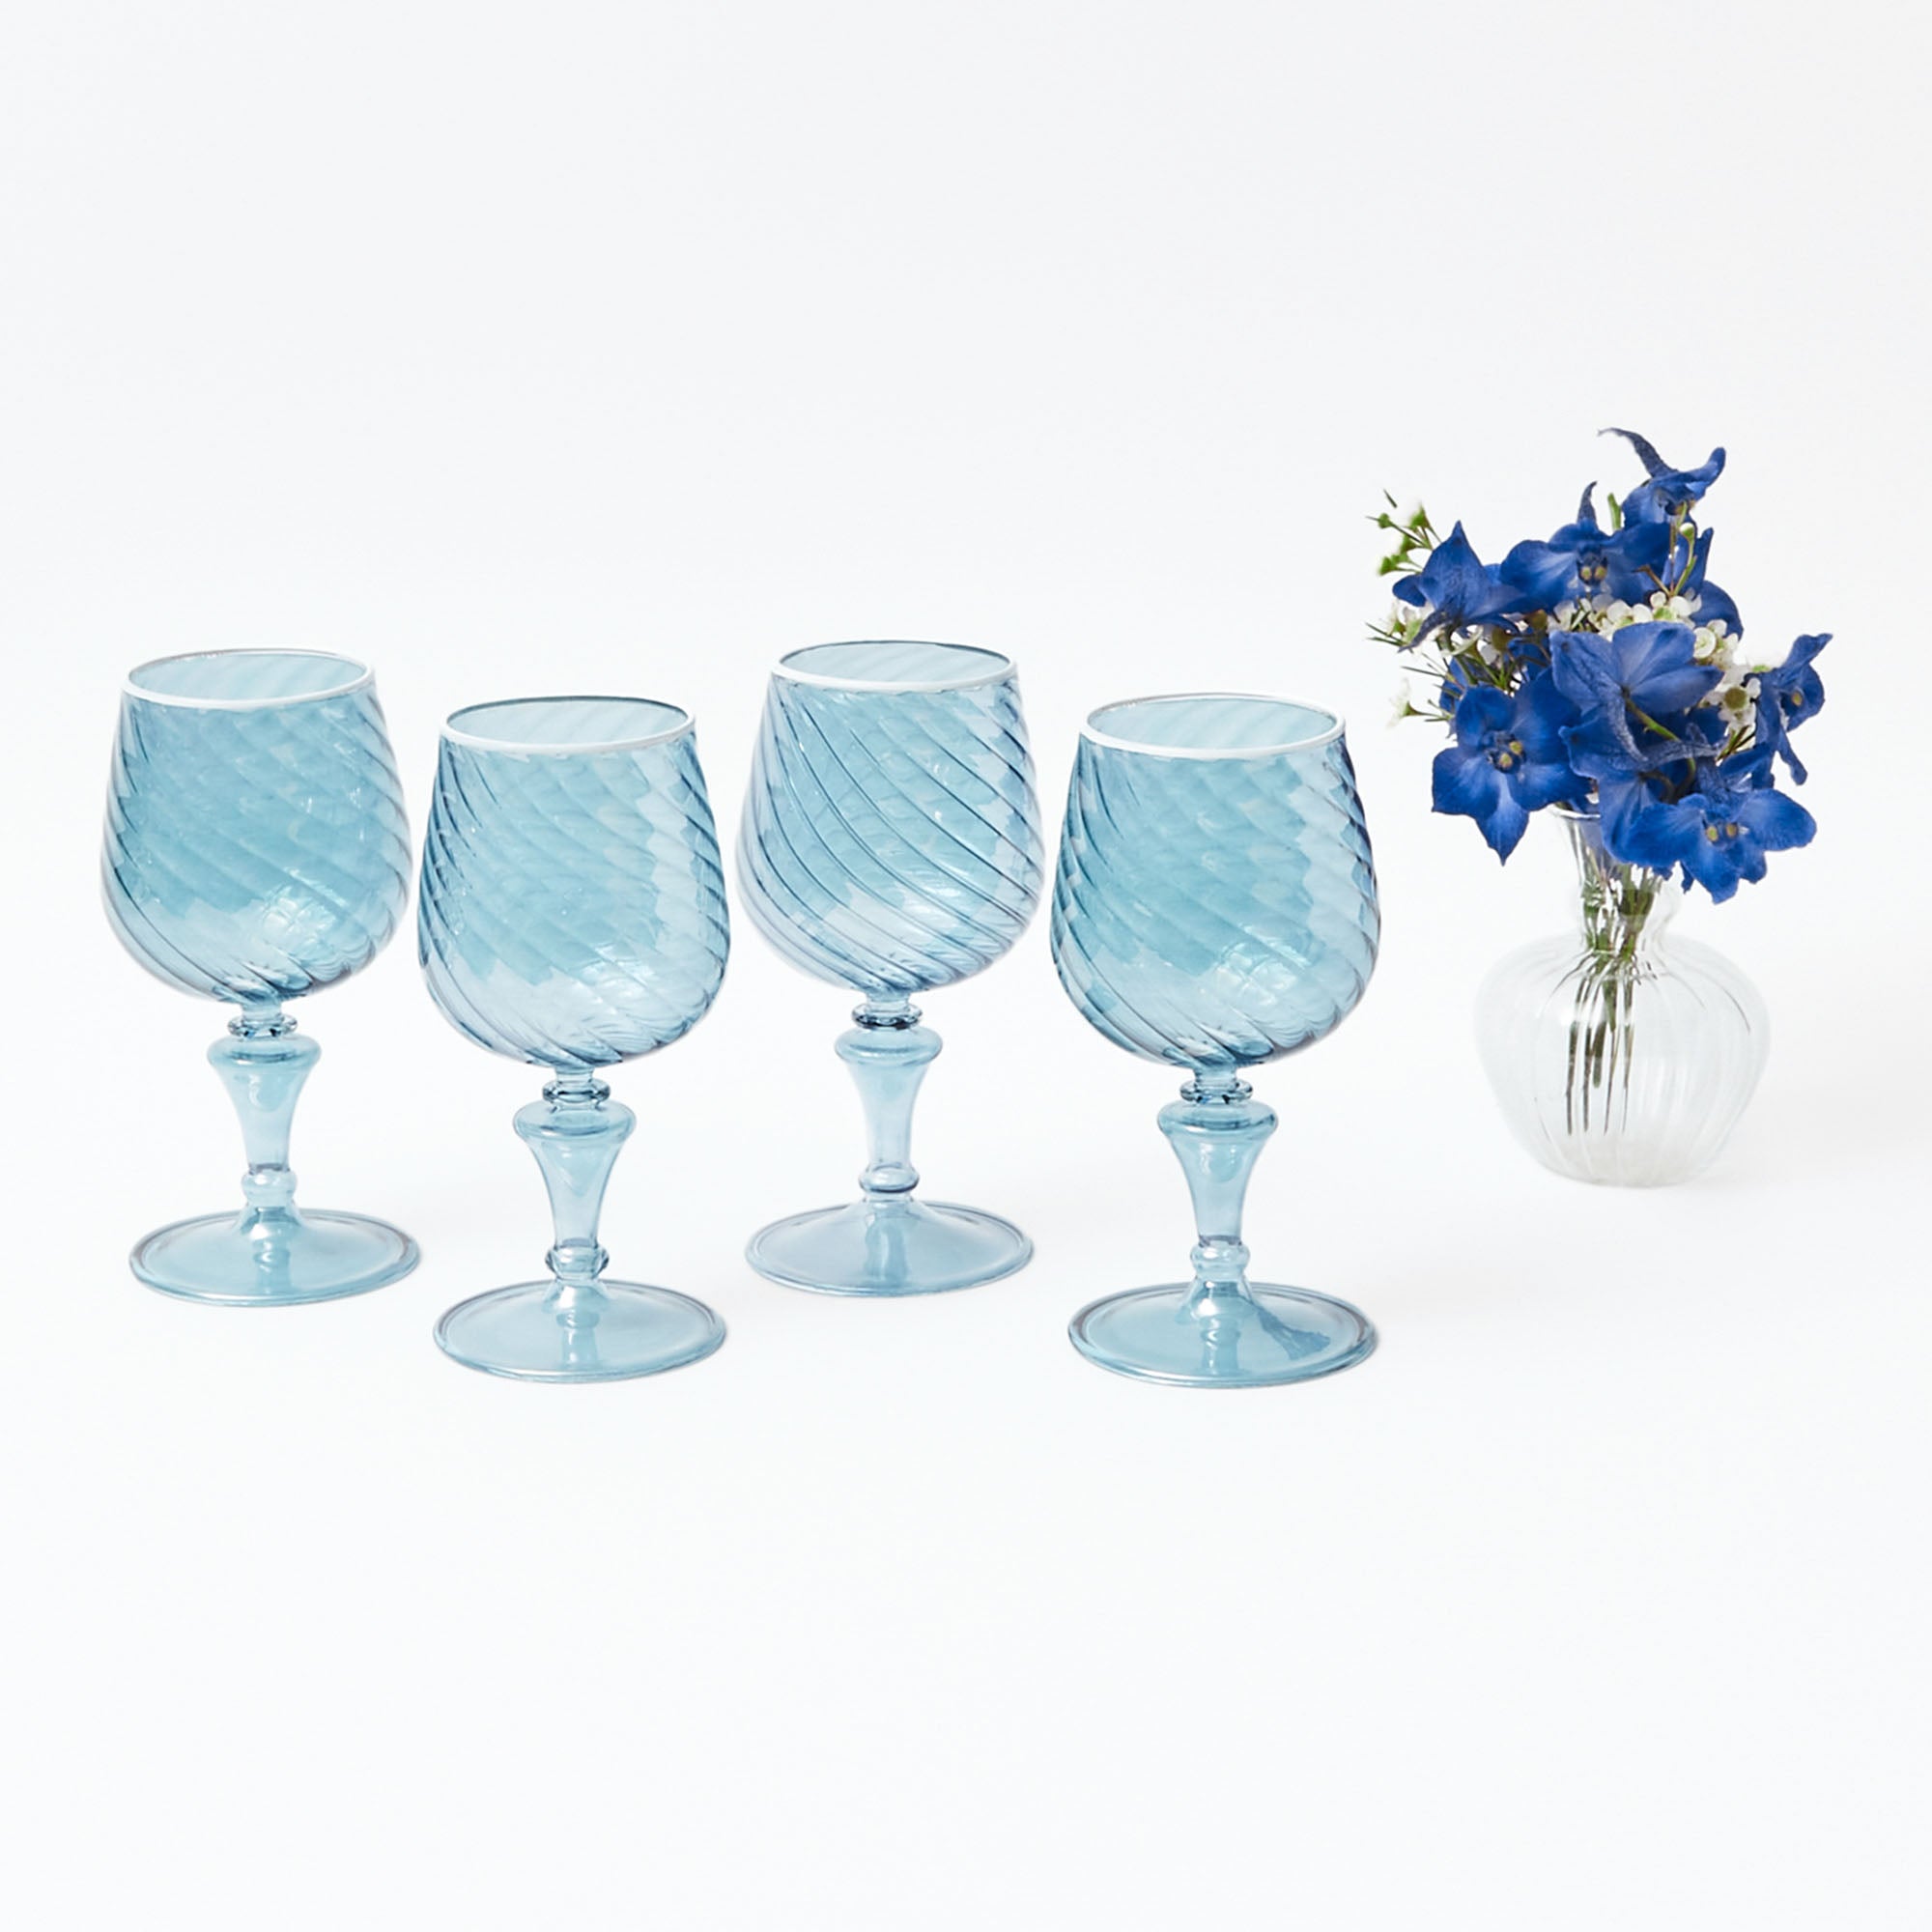 http://www.mrsalice.com/cdn/shop/files/camille-blue-wine-glasses-1.jpg?v=1695899339